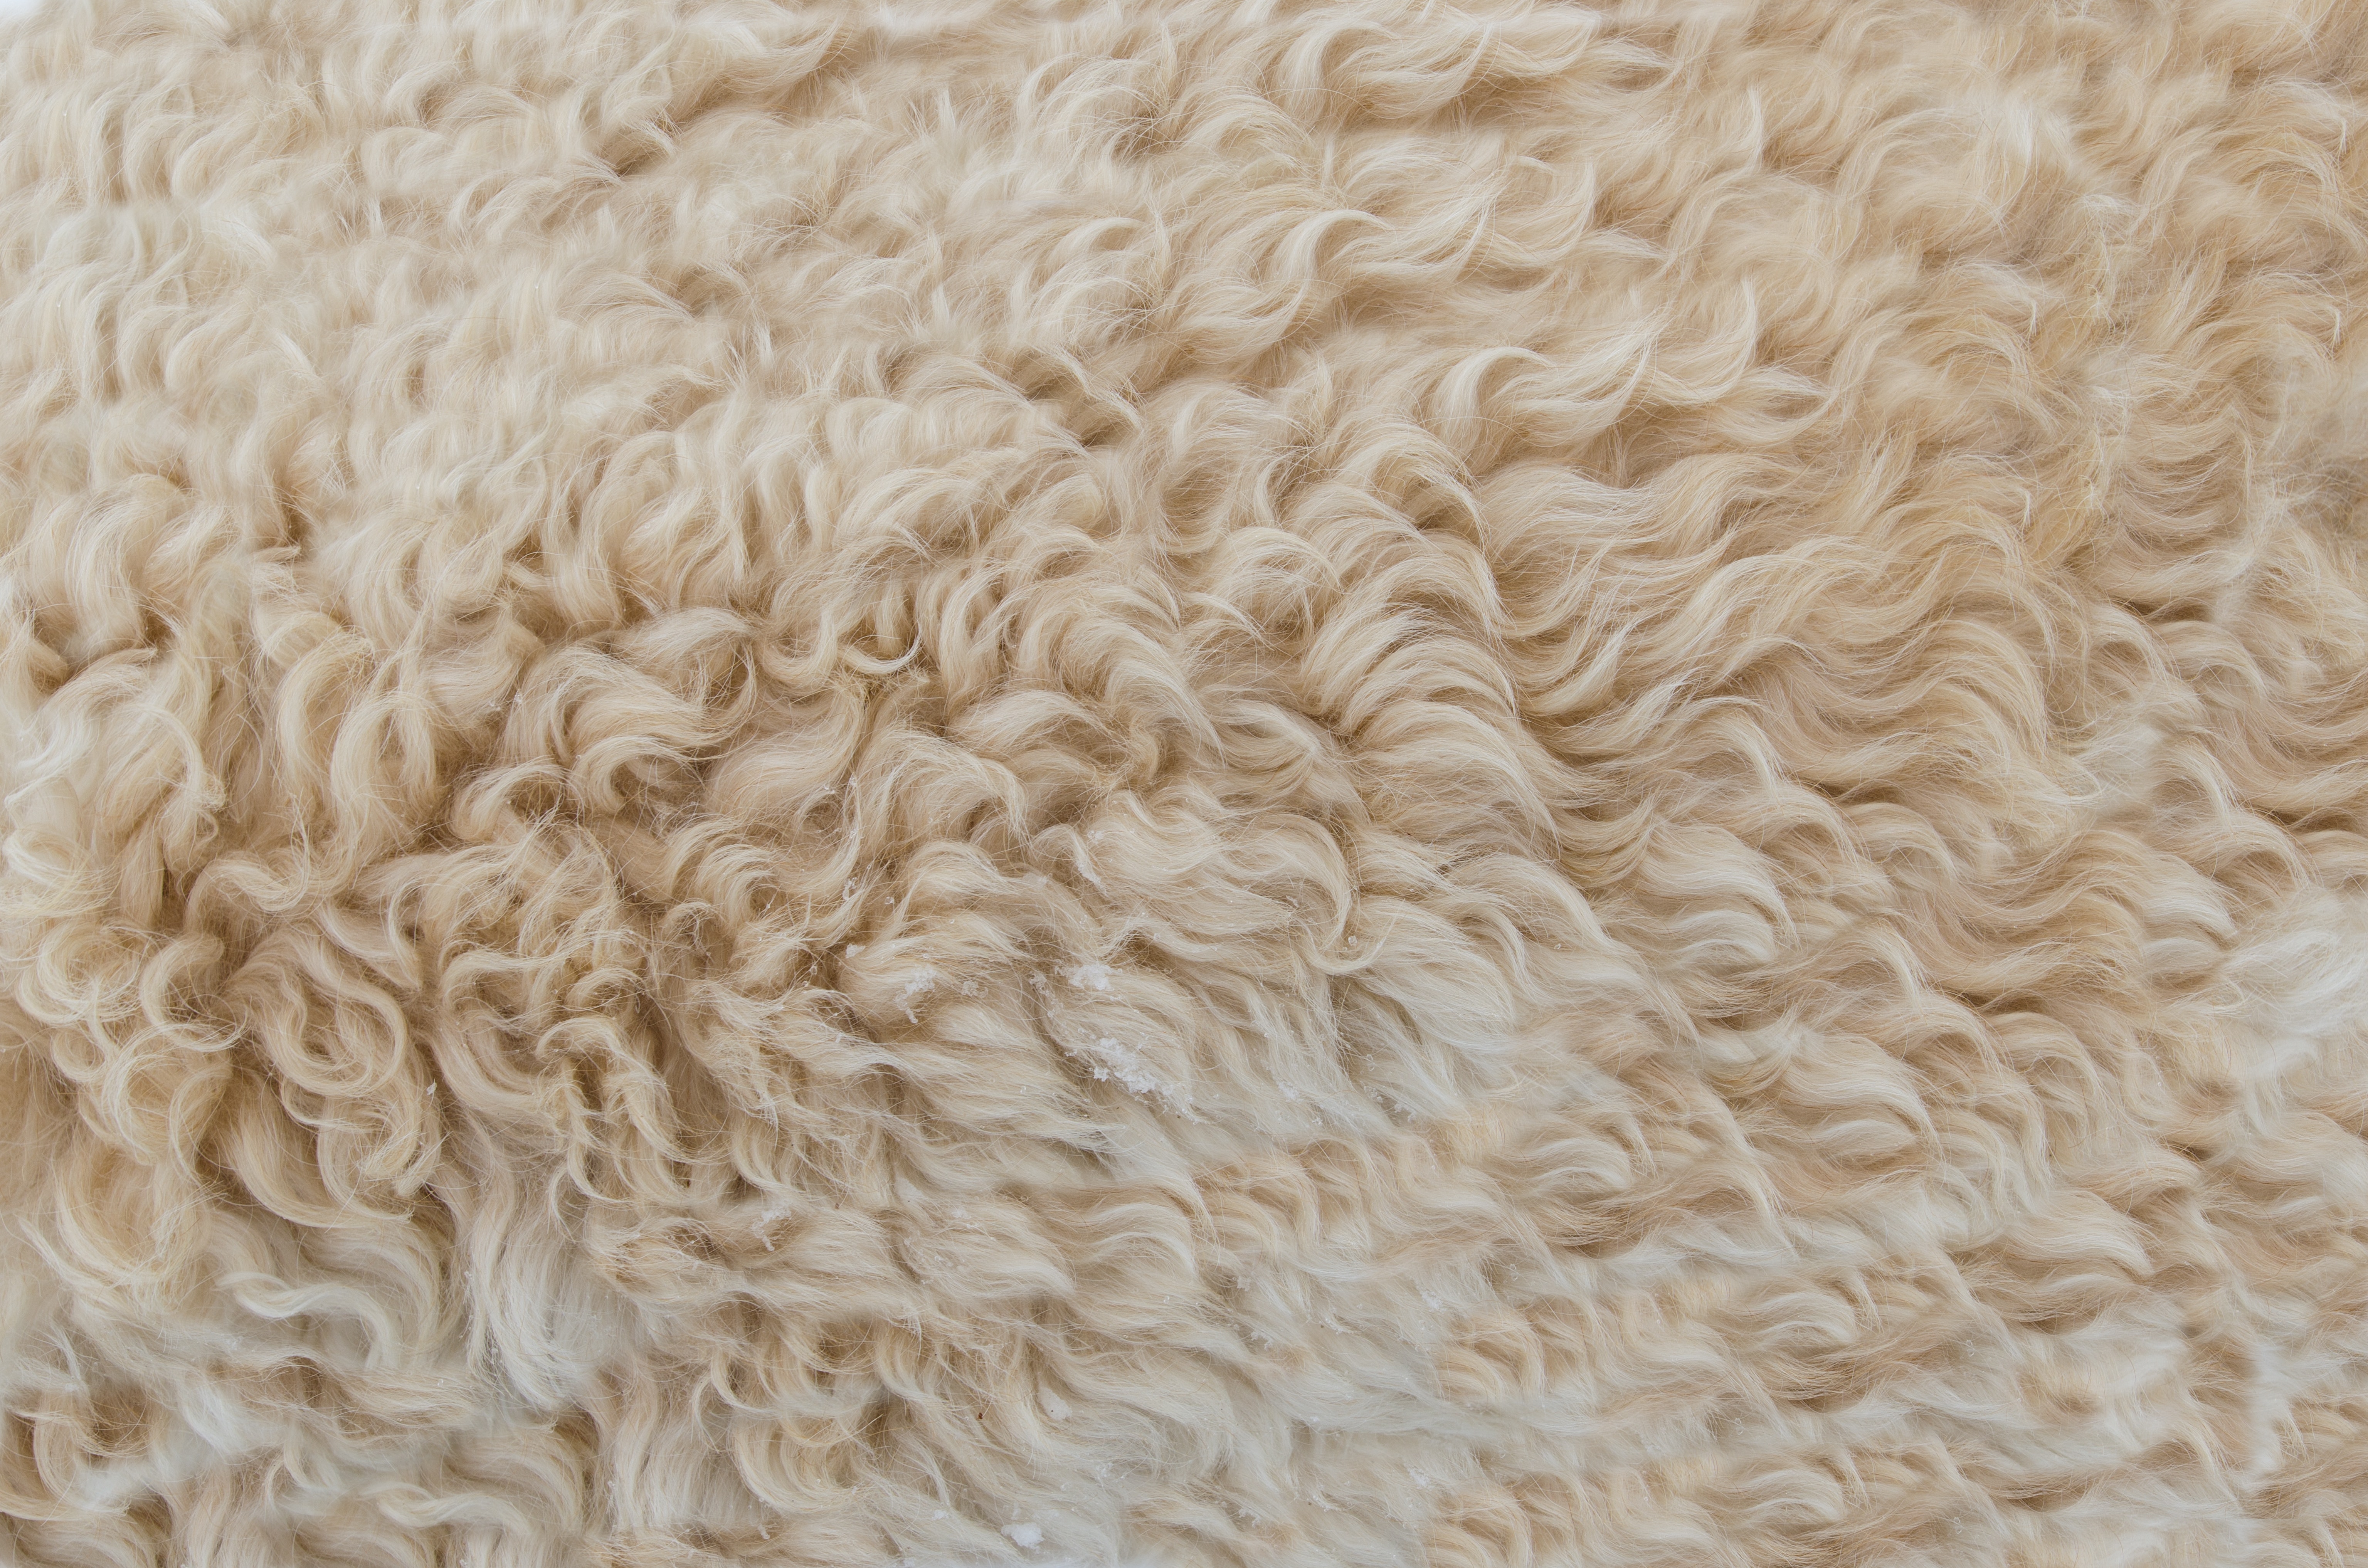 wool wallpaper,wool,fur,beige,textile,outerwear